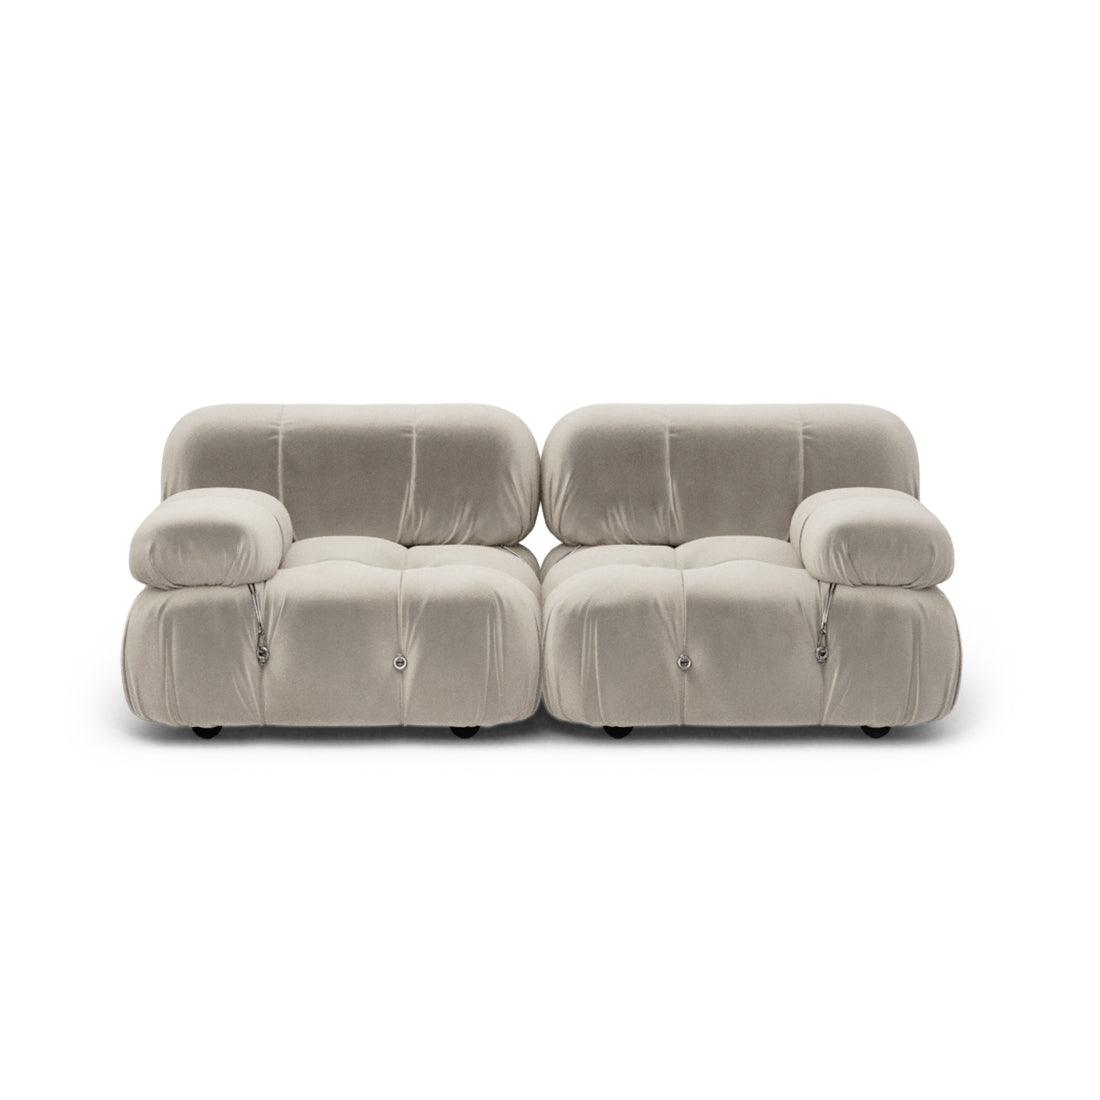 Mario Bellini Combination A Sofa Interior Moderna Pearl White Boucle  